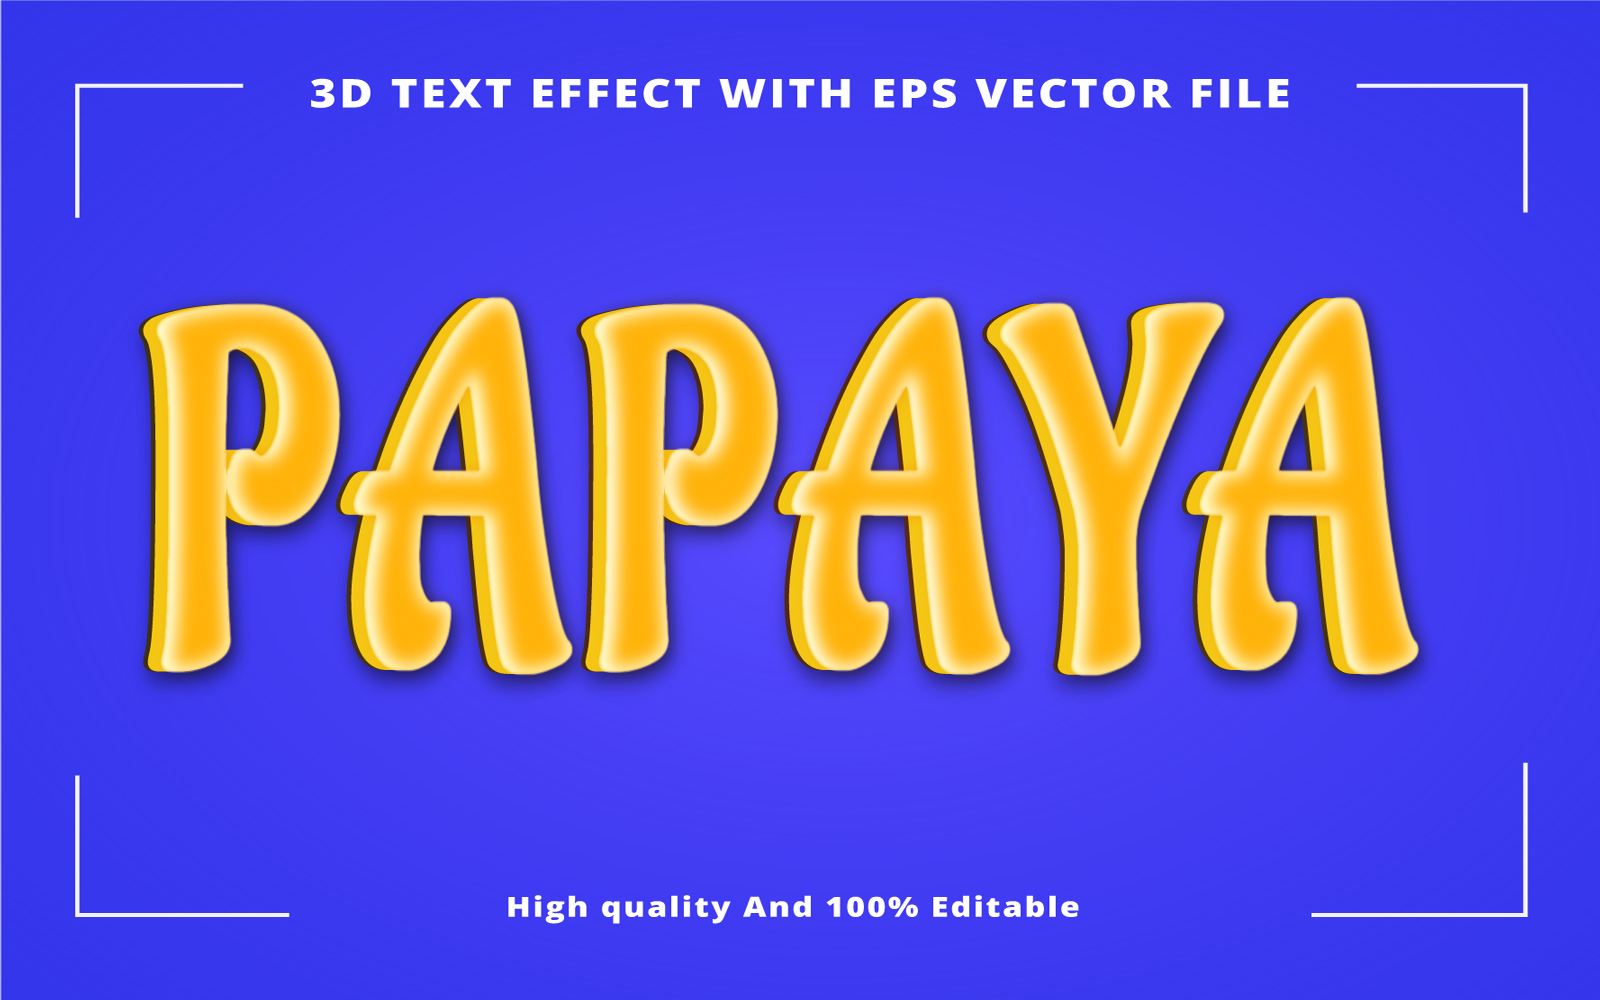 Papaya High quality Fully Editable 3D Text effect EPS Vector